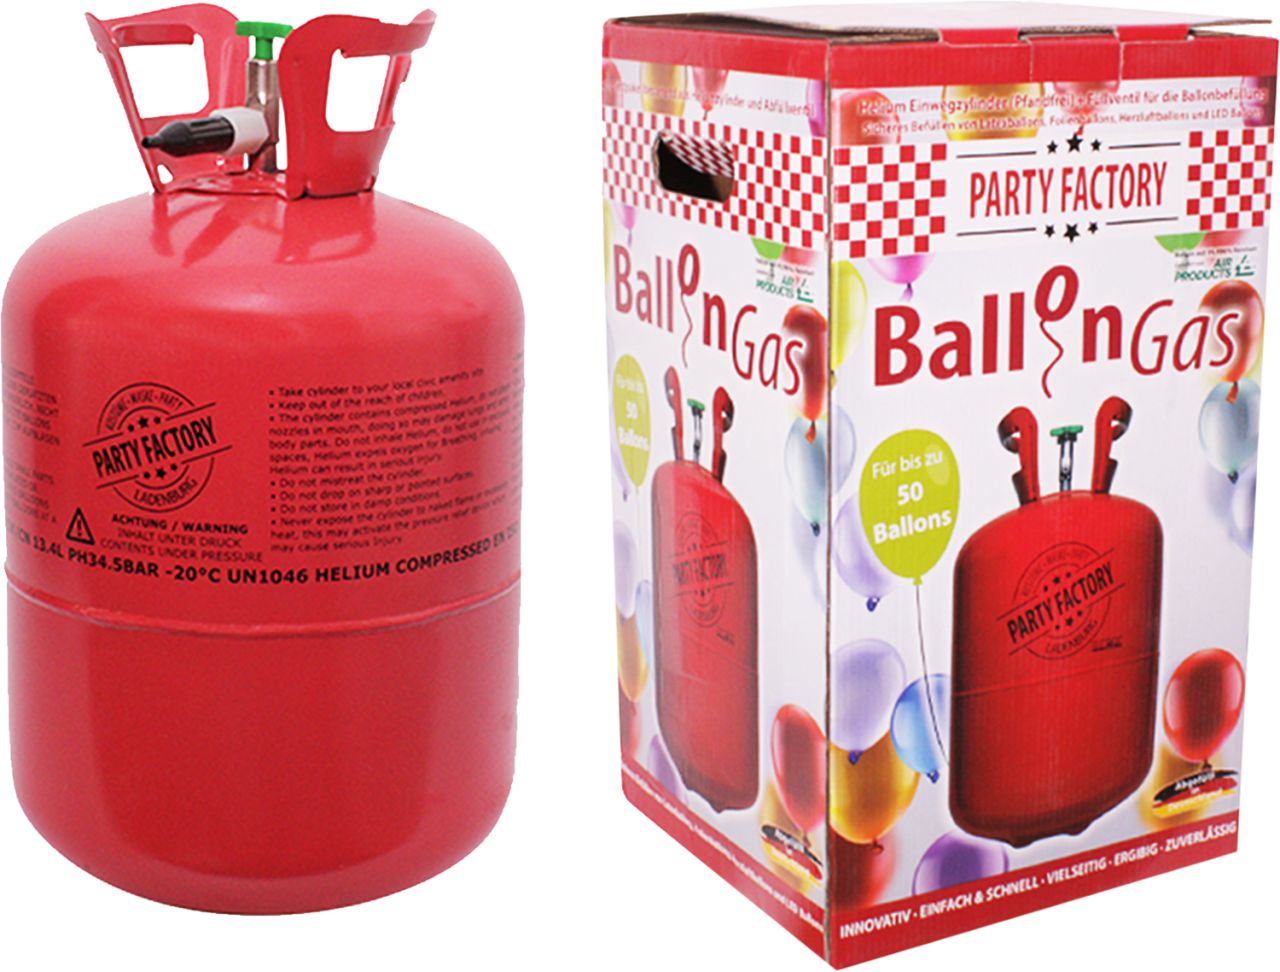 Party Factory Ballongas Helium für ca. 50 Luftballons GLO761220565